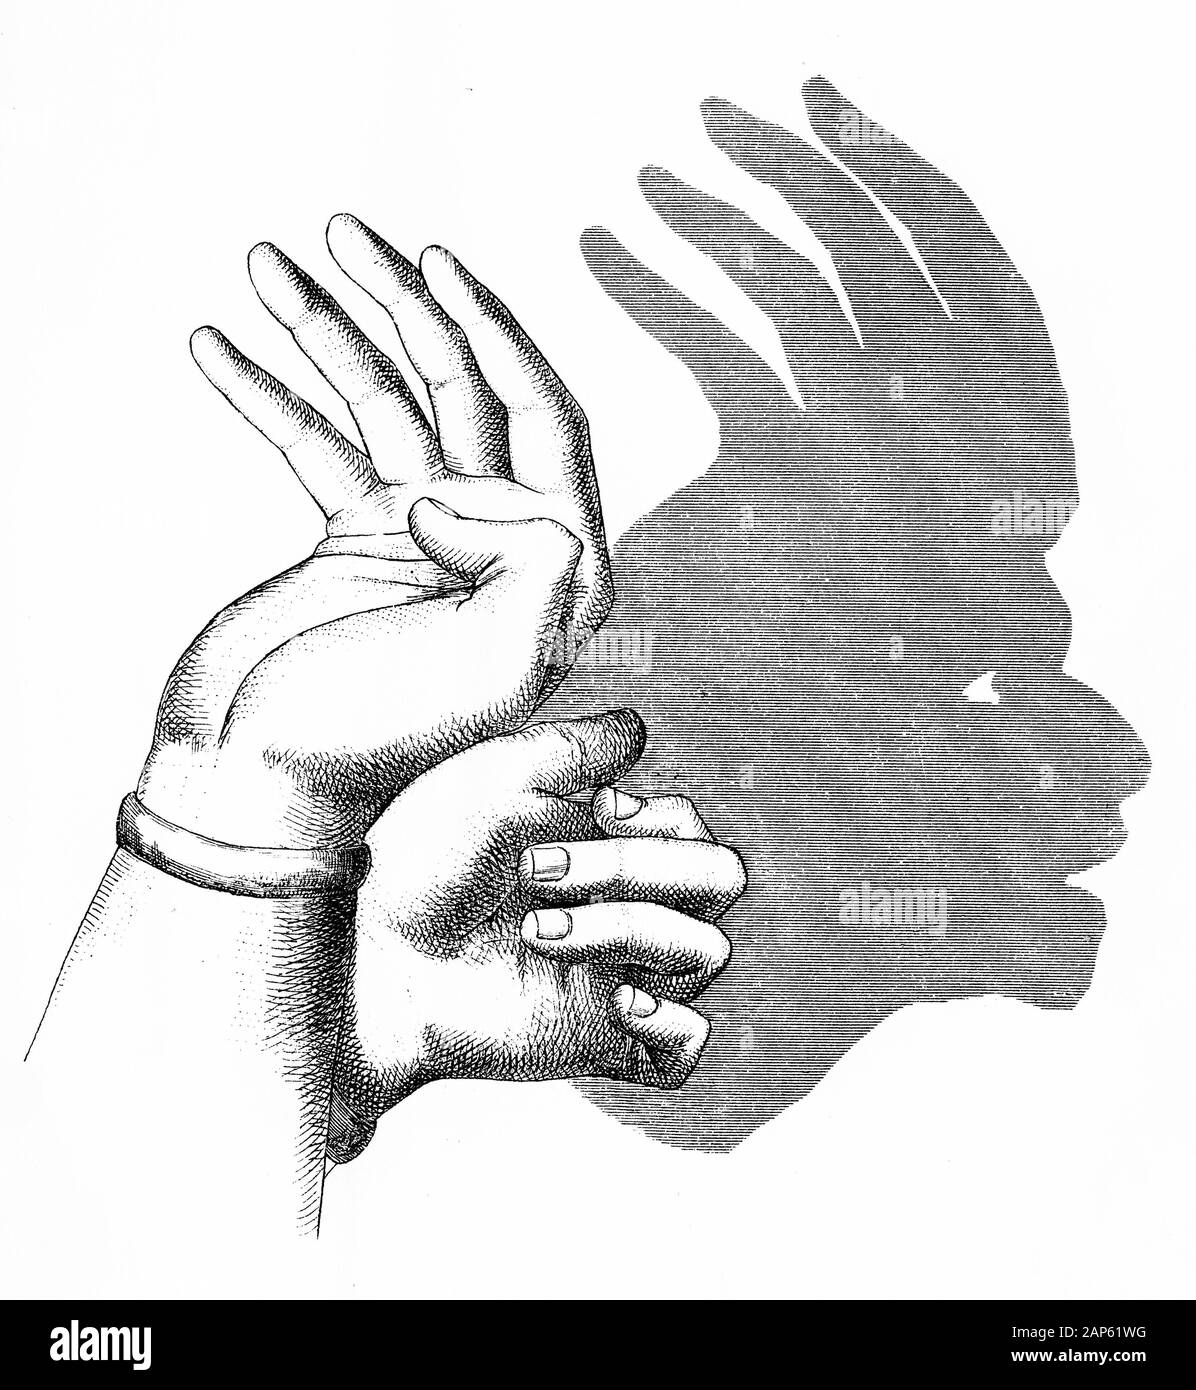 Gravure d'une part d'une ombre American Indian portant un couvre-chef en plumes. Le livre de Henry Bursill plus part des ombres, 1860. Banque D'Images